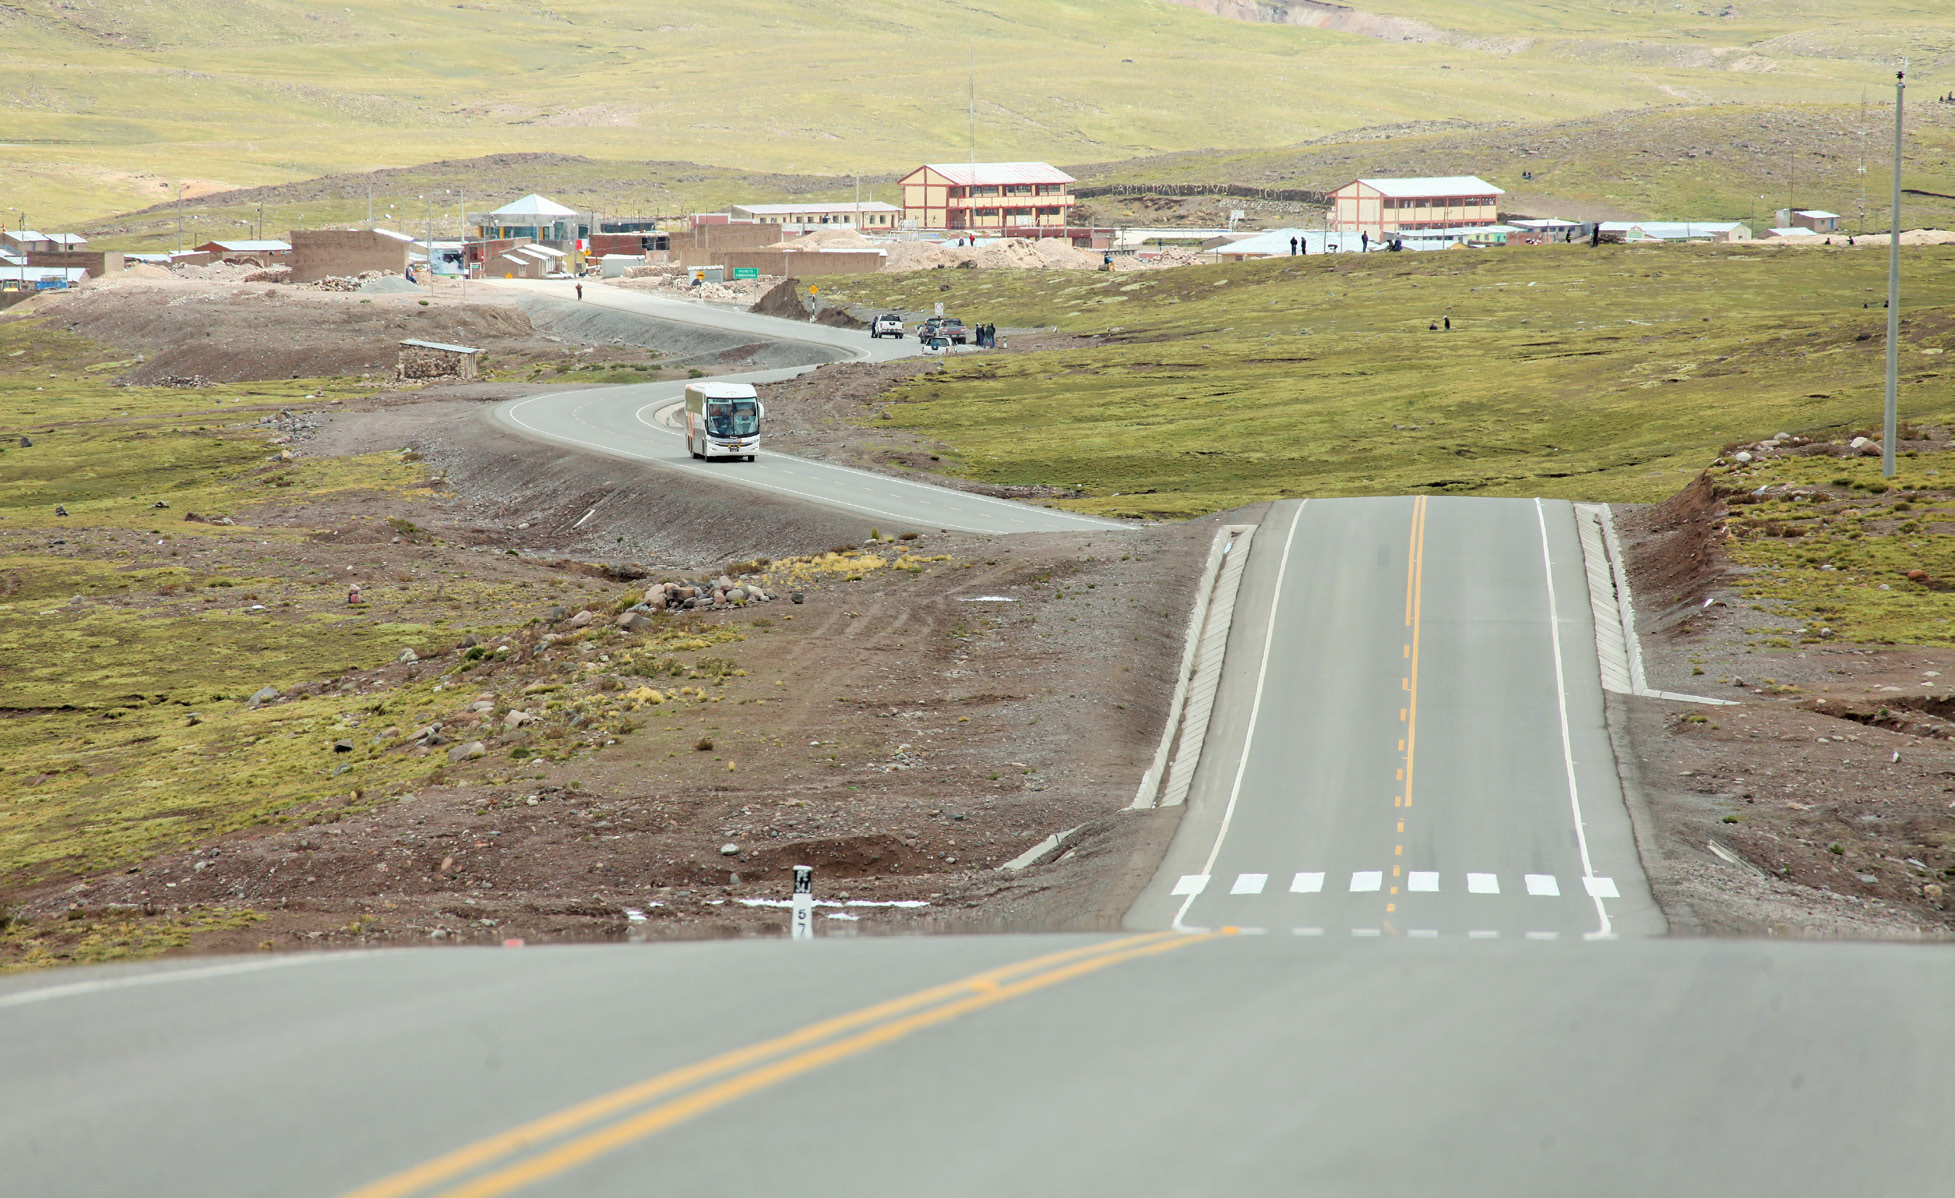 Mejoras en la RD VIAL La proporción de kilómetros pavimentados de la red vial nacional de Cusco pasó de 43,8% en julio del 2011 a 79,1% en julio del 2016.